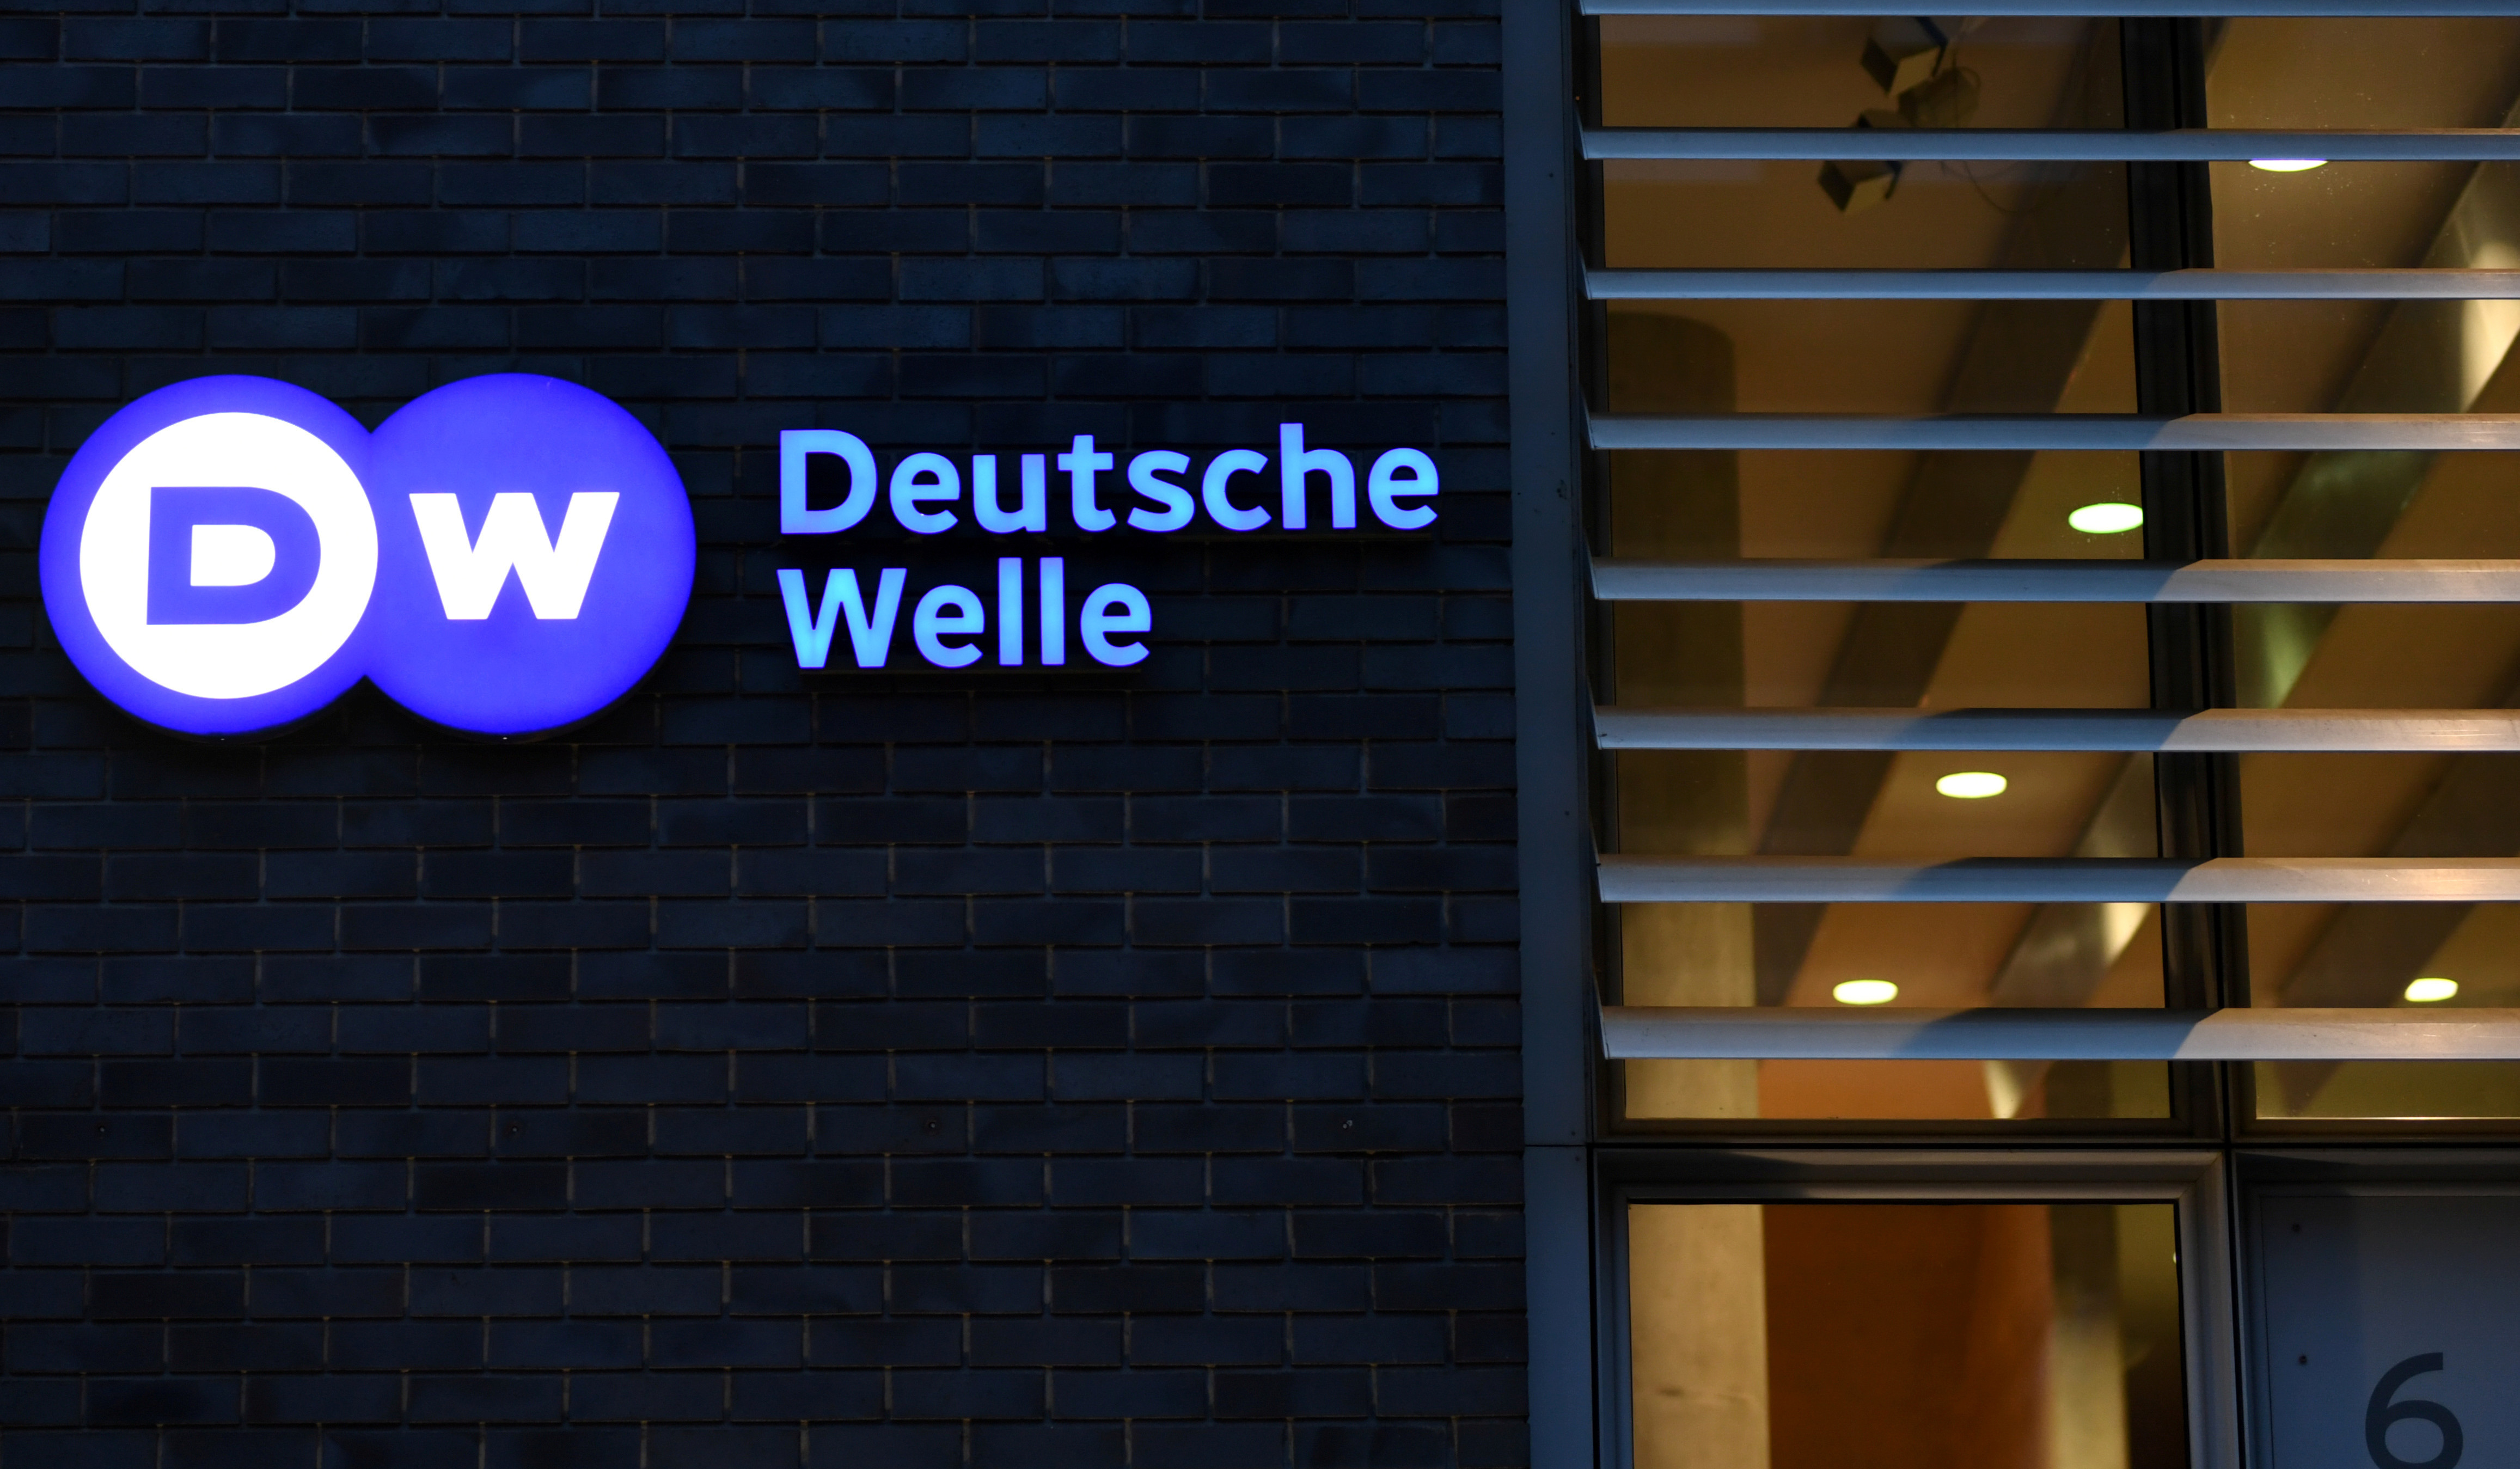 Ռուսաստանն արգելել է Deutsche Welle-ի հեռարձակումը և չեղարկել Մոսկվայի գրասենյակի աշխատակիցների հավատարմագրումը